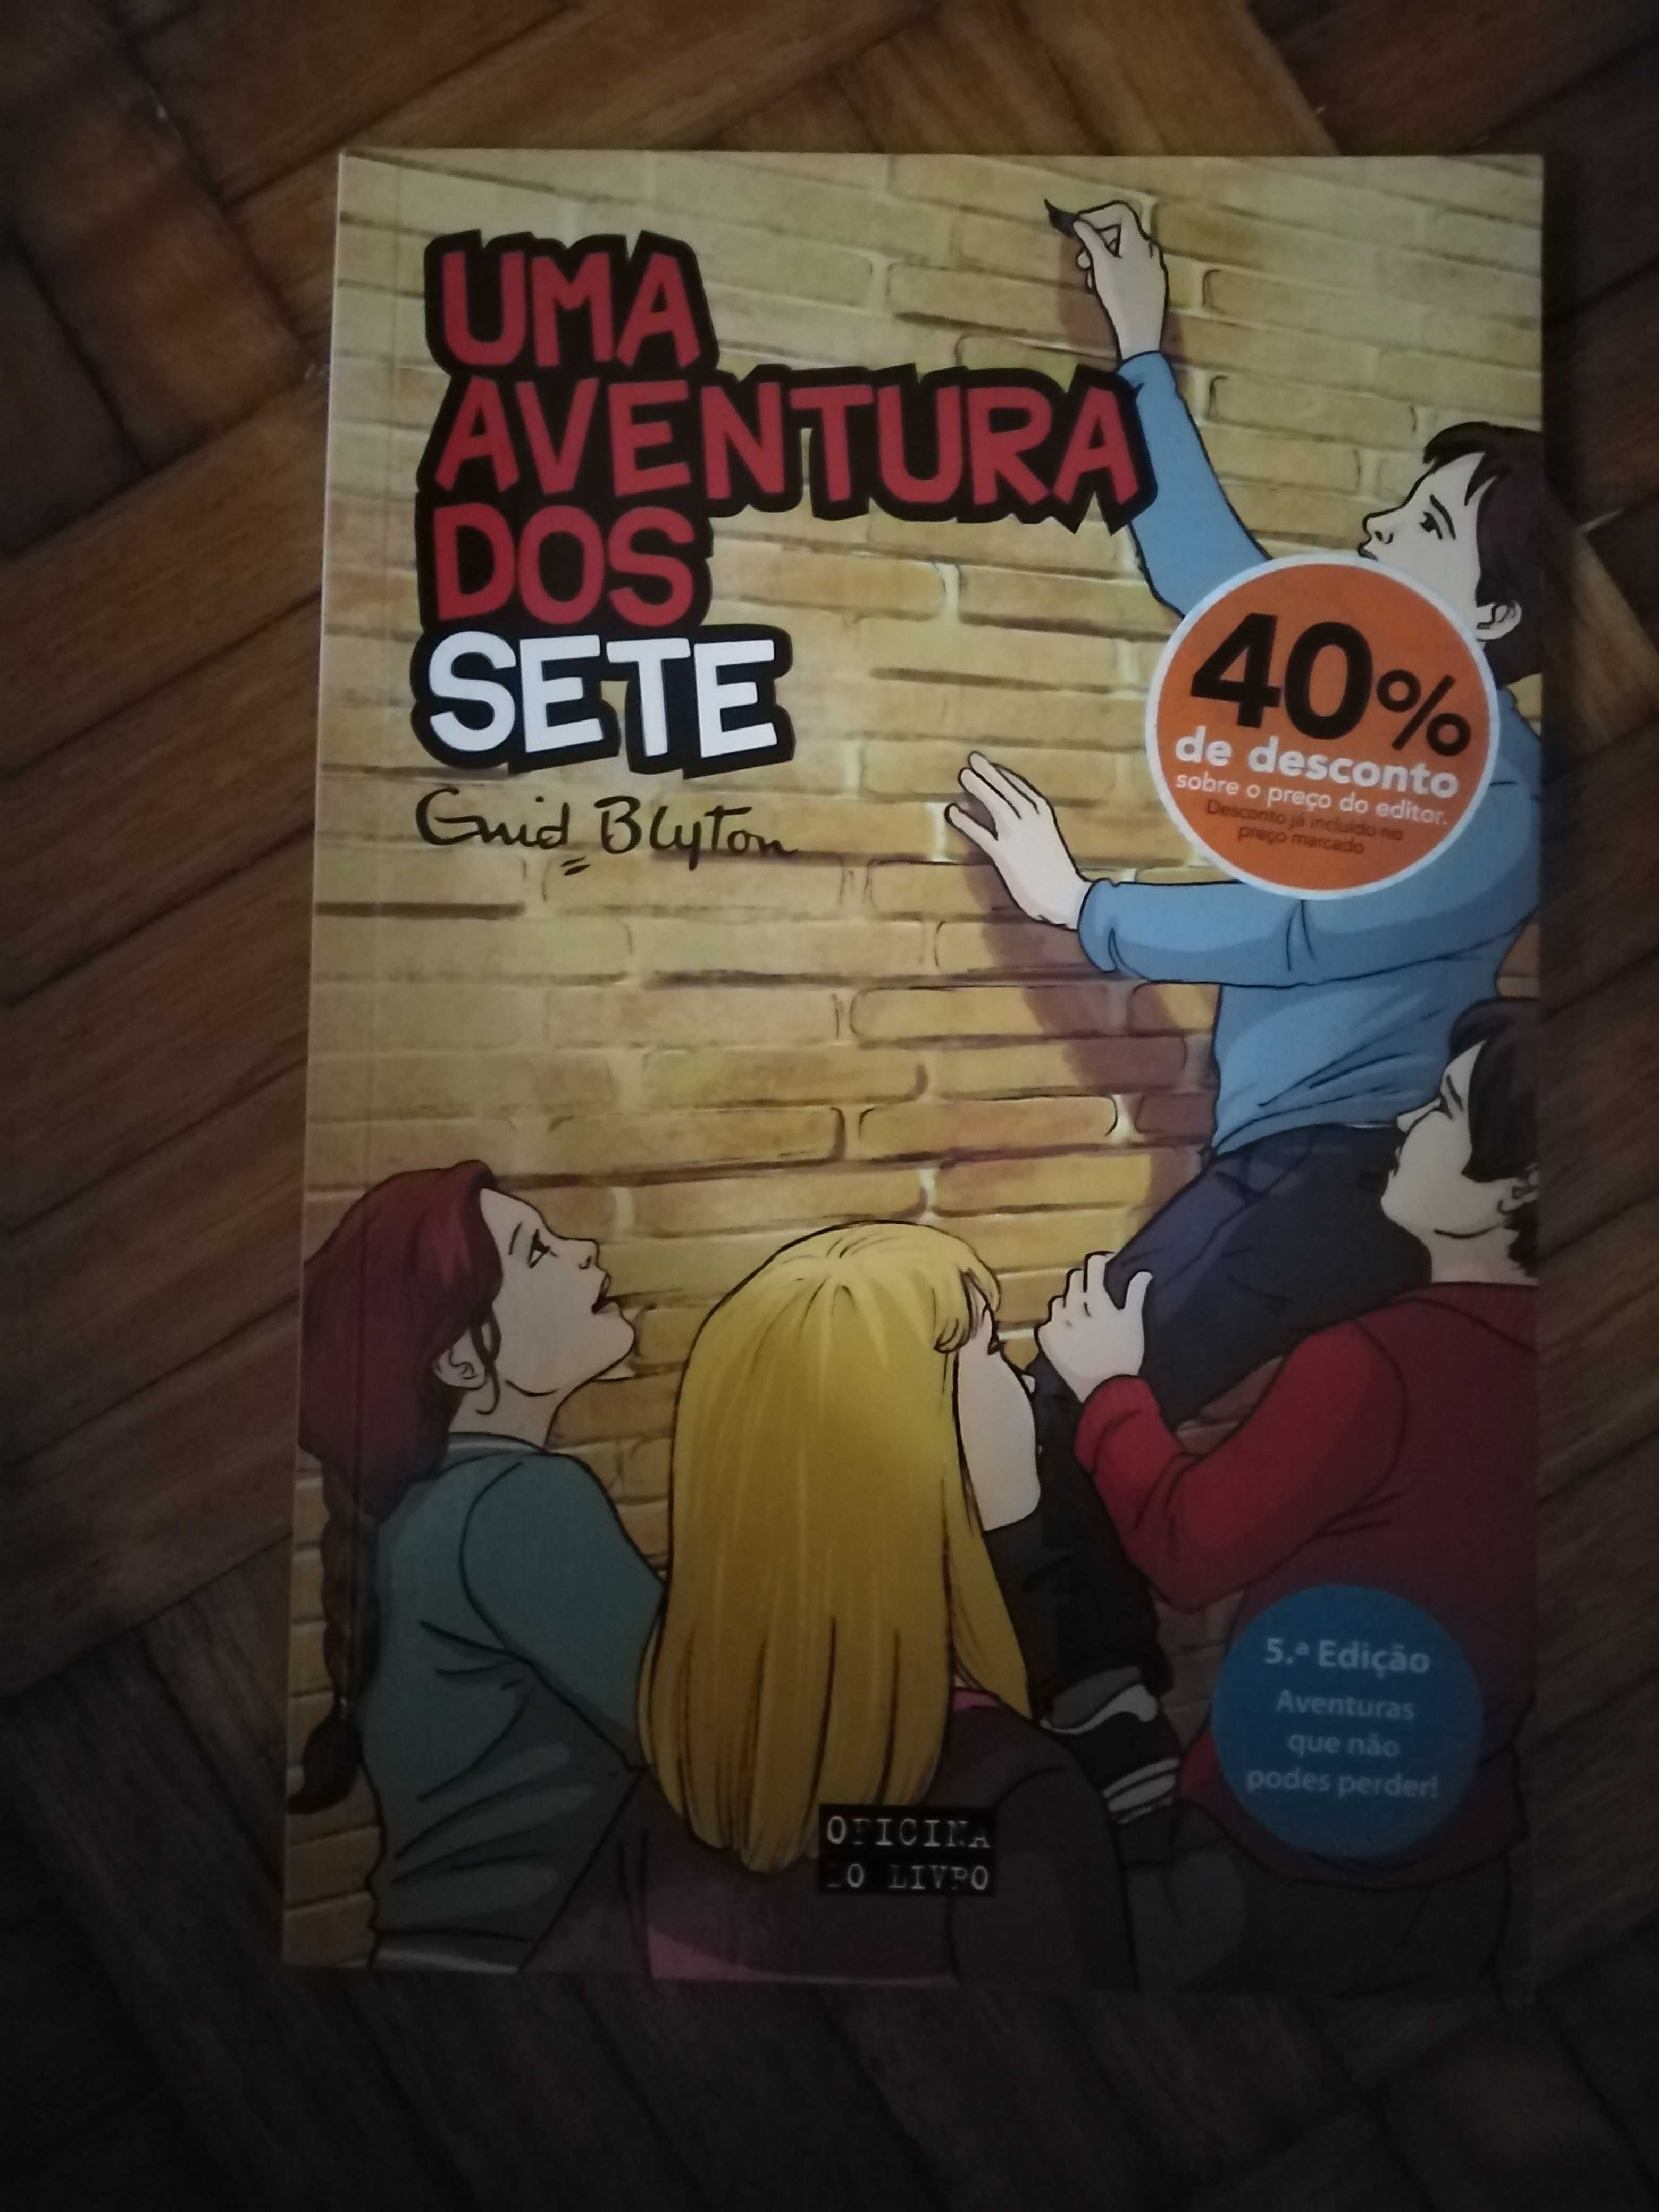 Livro "Uma aventura dos sete"